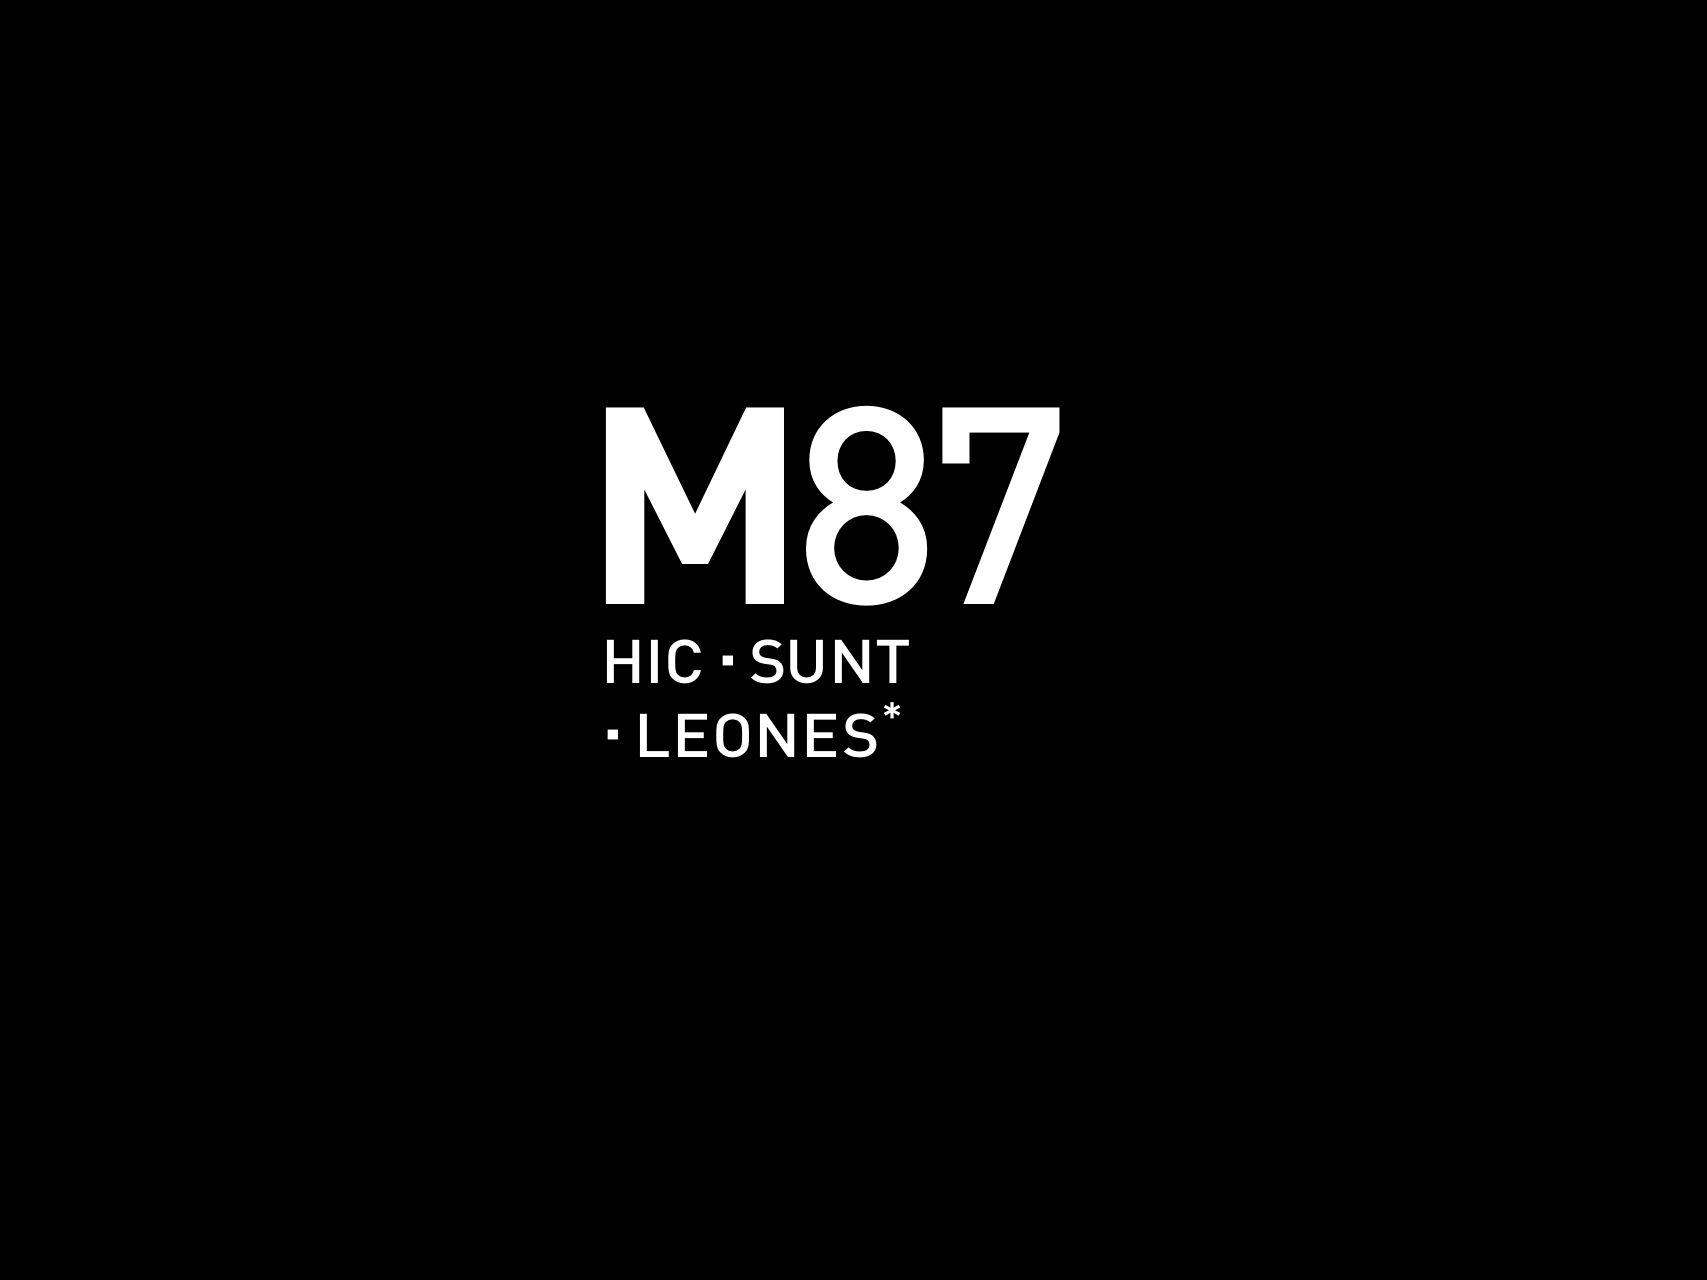 M87 HIC SUNT LEONES